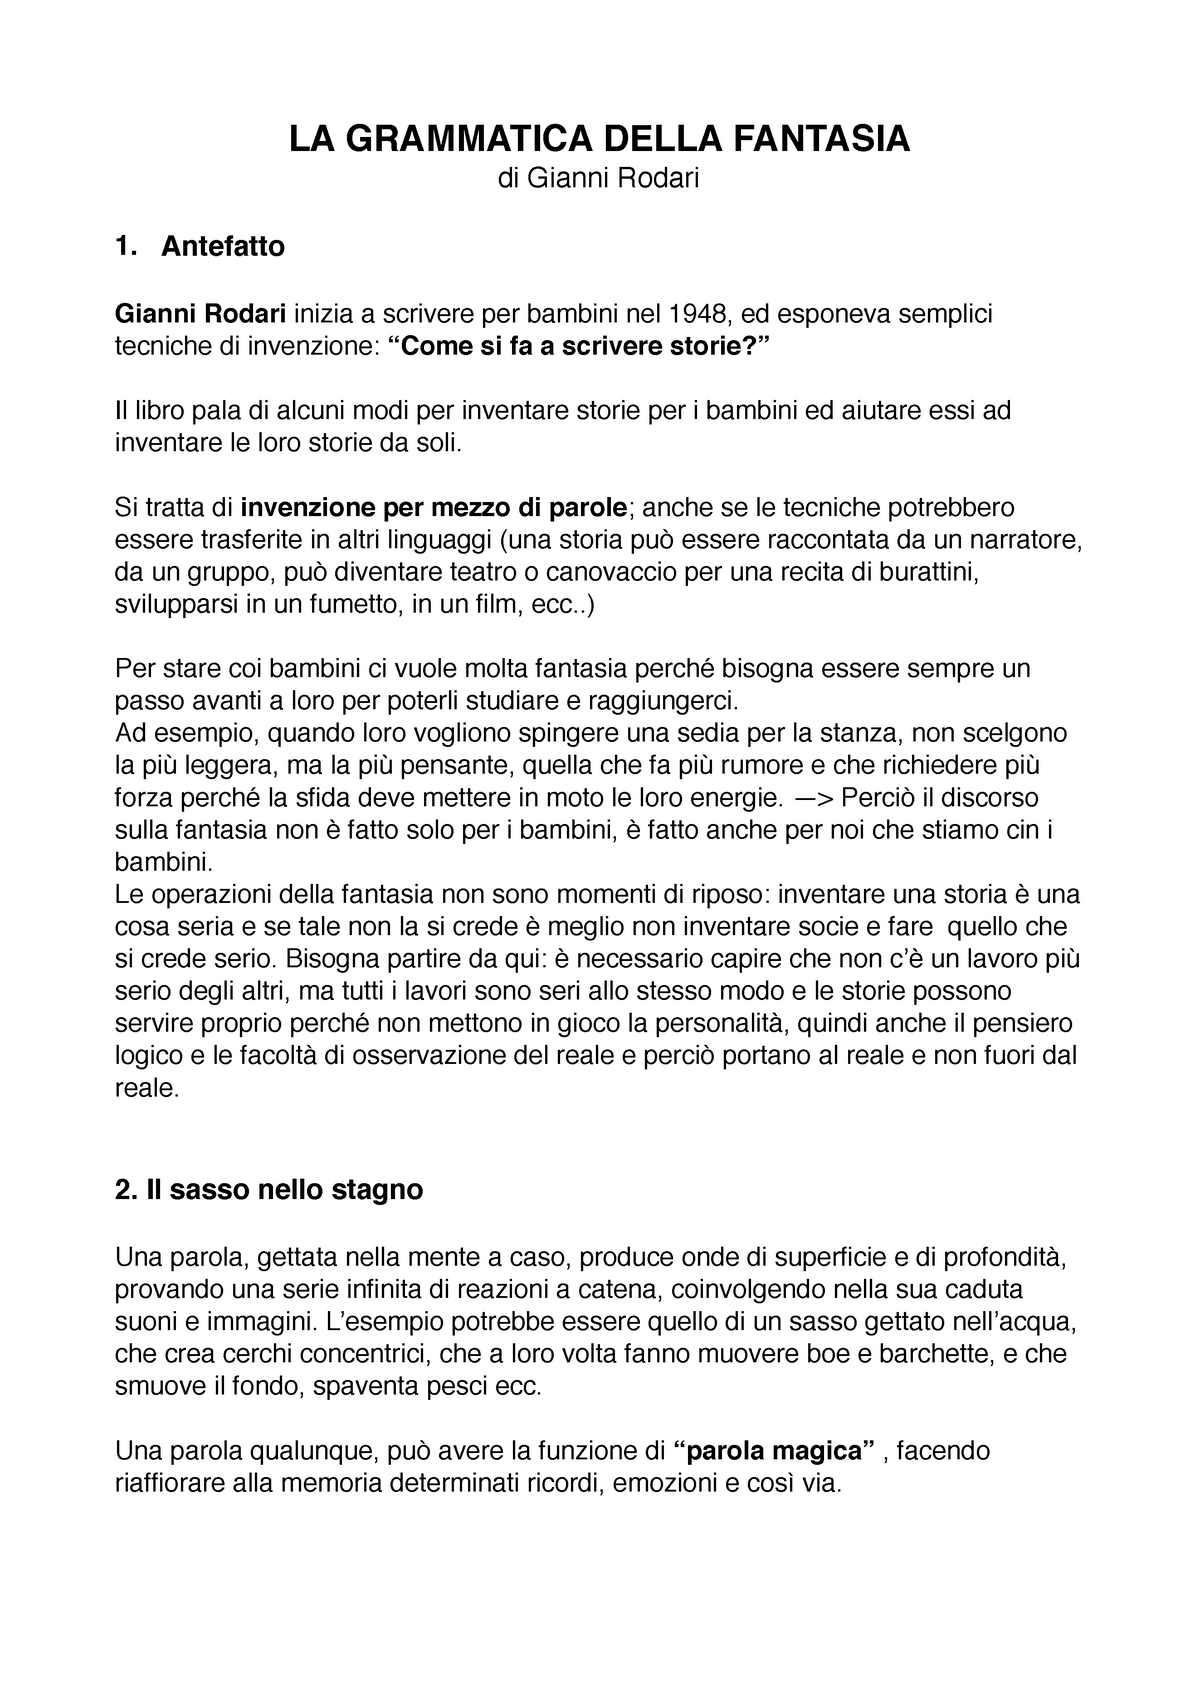 La grammatica della fantasia 3 - LA GRAMMATICA DELLA FANTASIA di Gianni  Rodari 1. Antefatto Gianni - Studocu